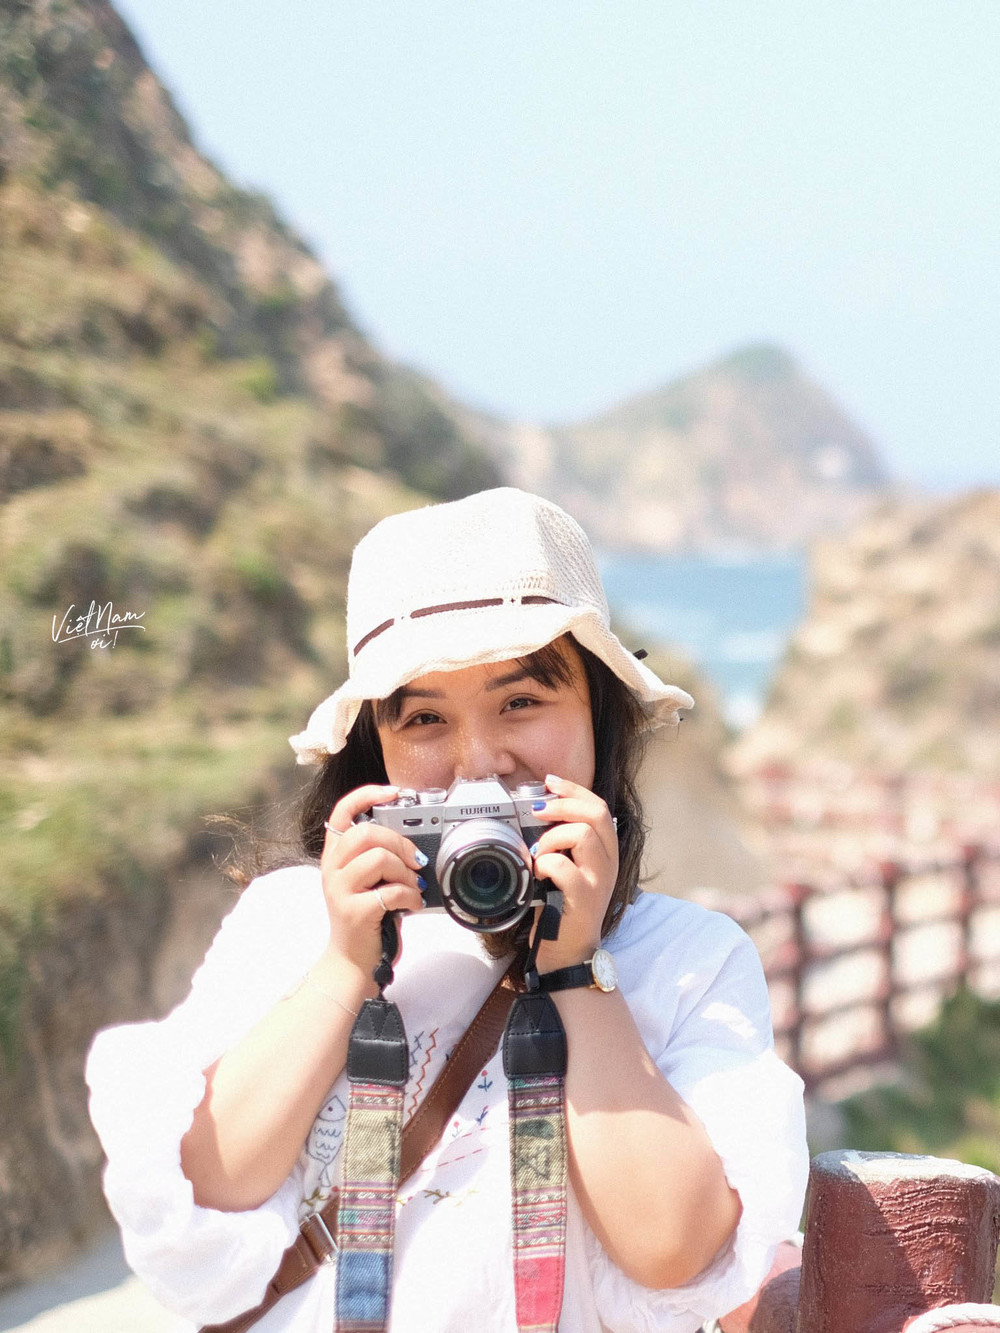  
Từ đam mê khám phá, Hoàng Anh thêm vào niềm yêu thích chụp ảnh và viết blog về du lịch.